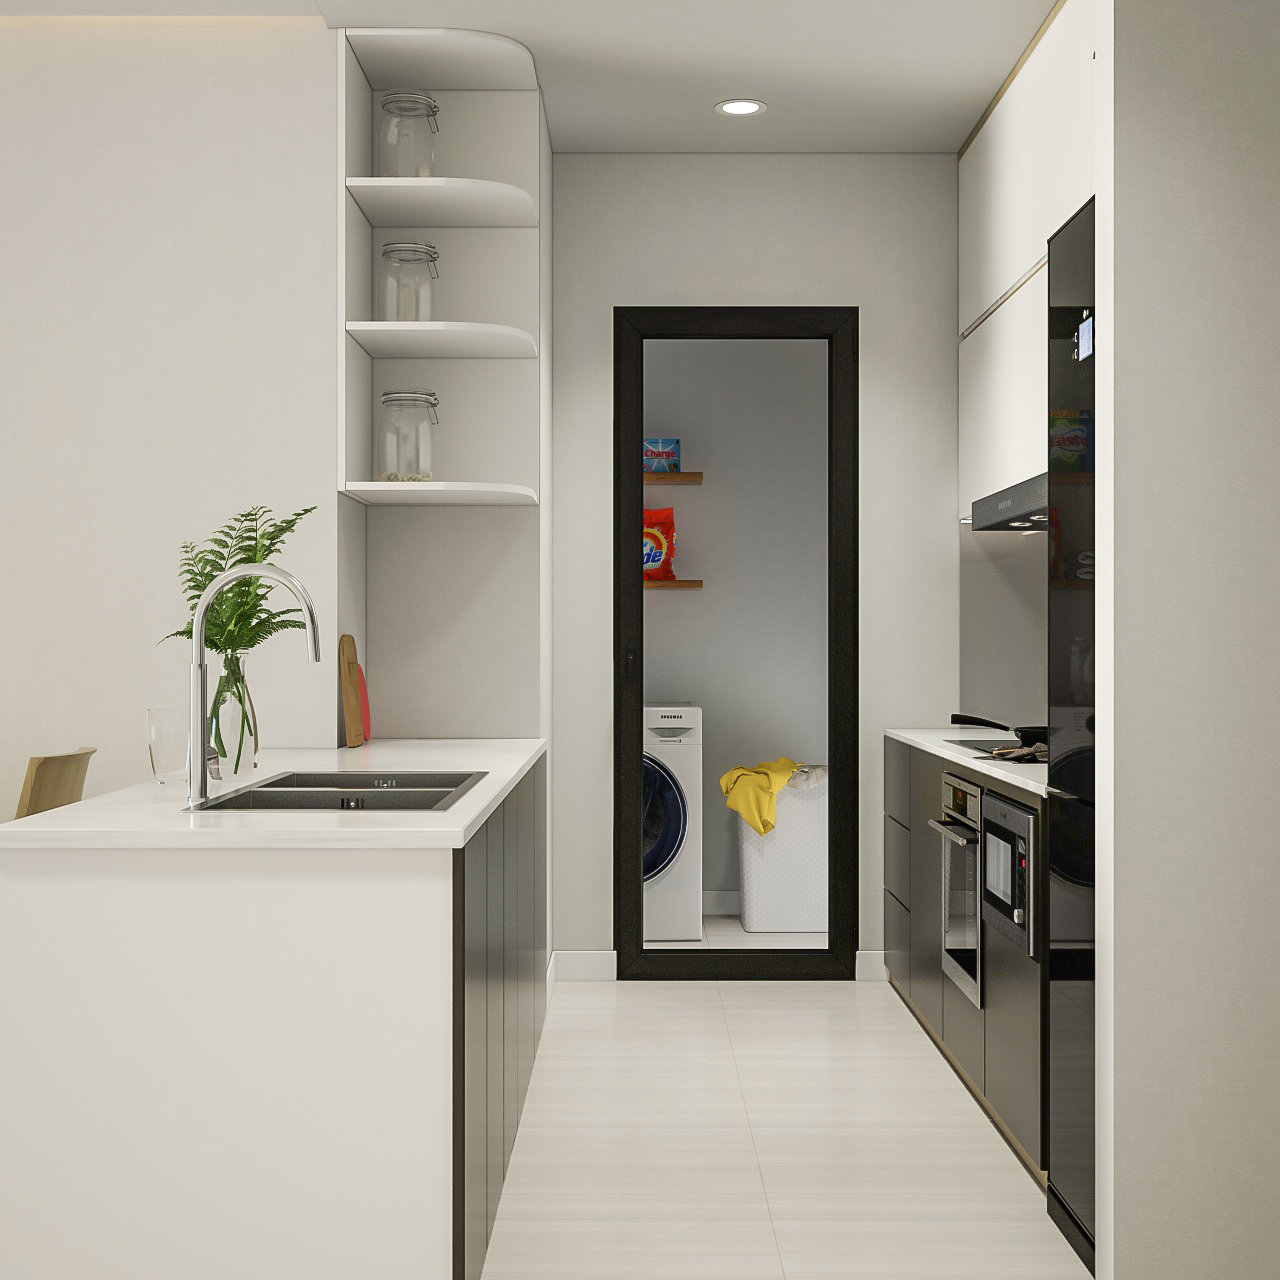 Phòng bếp, phong cách Tối giản Minimalist, thiết kế concept nội thất, căn hộ The Tresor